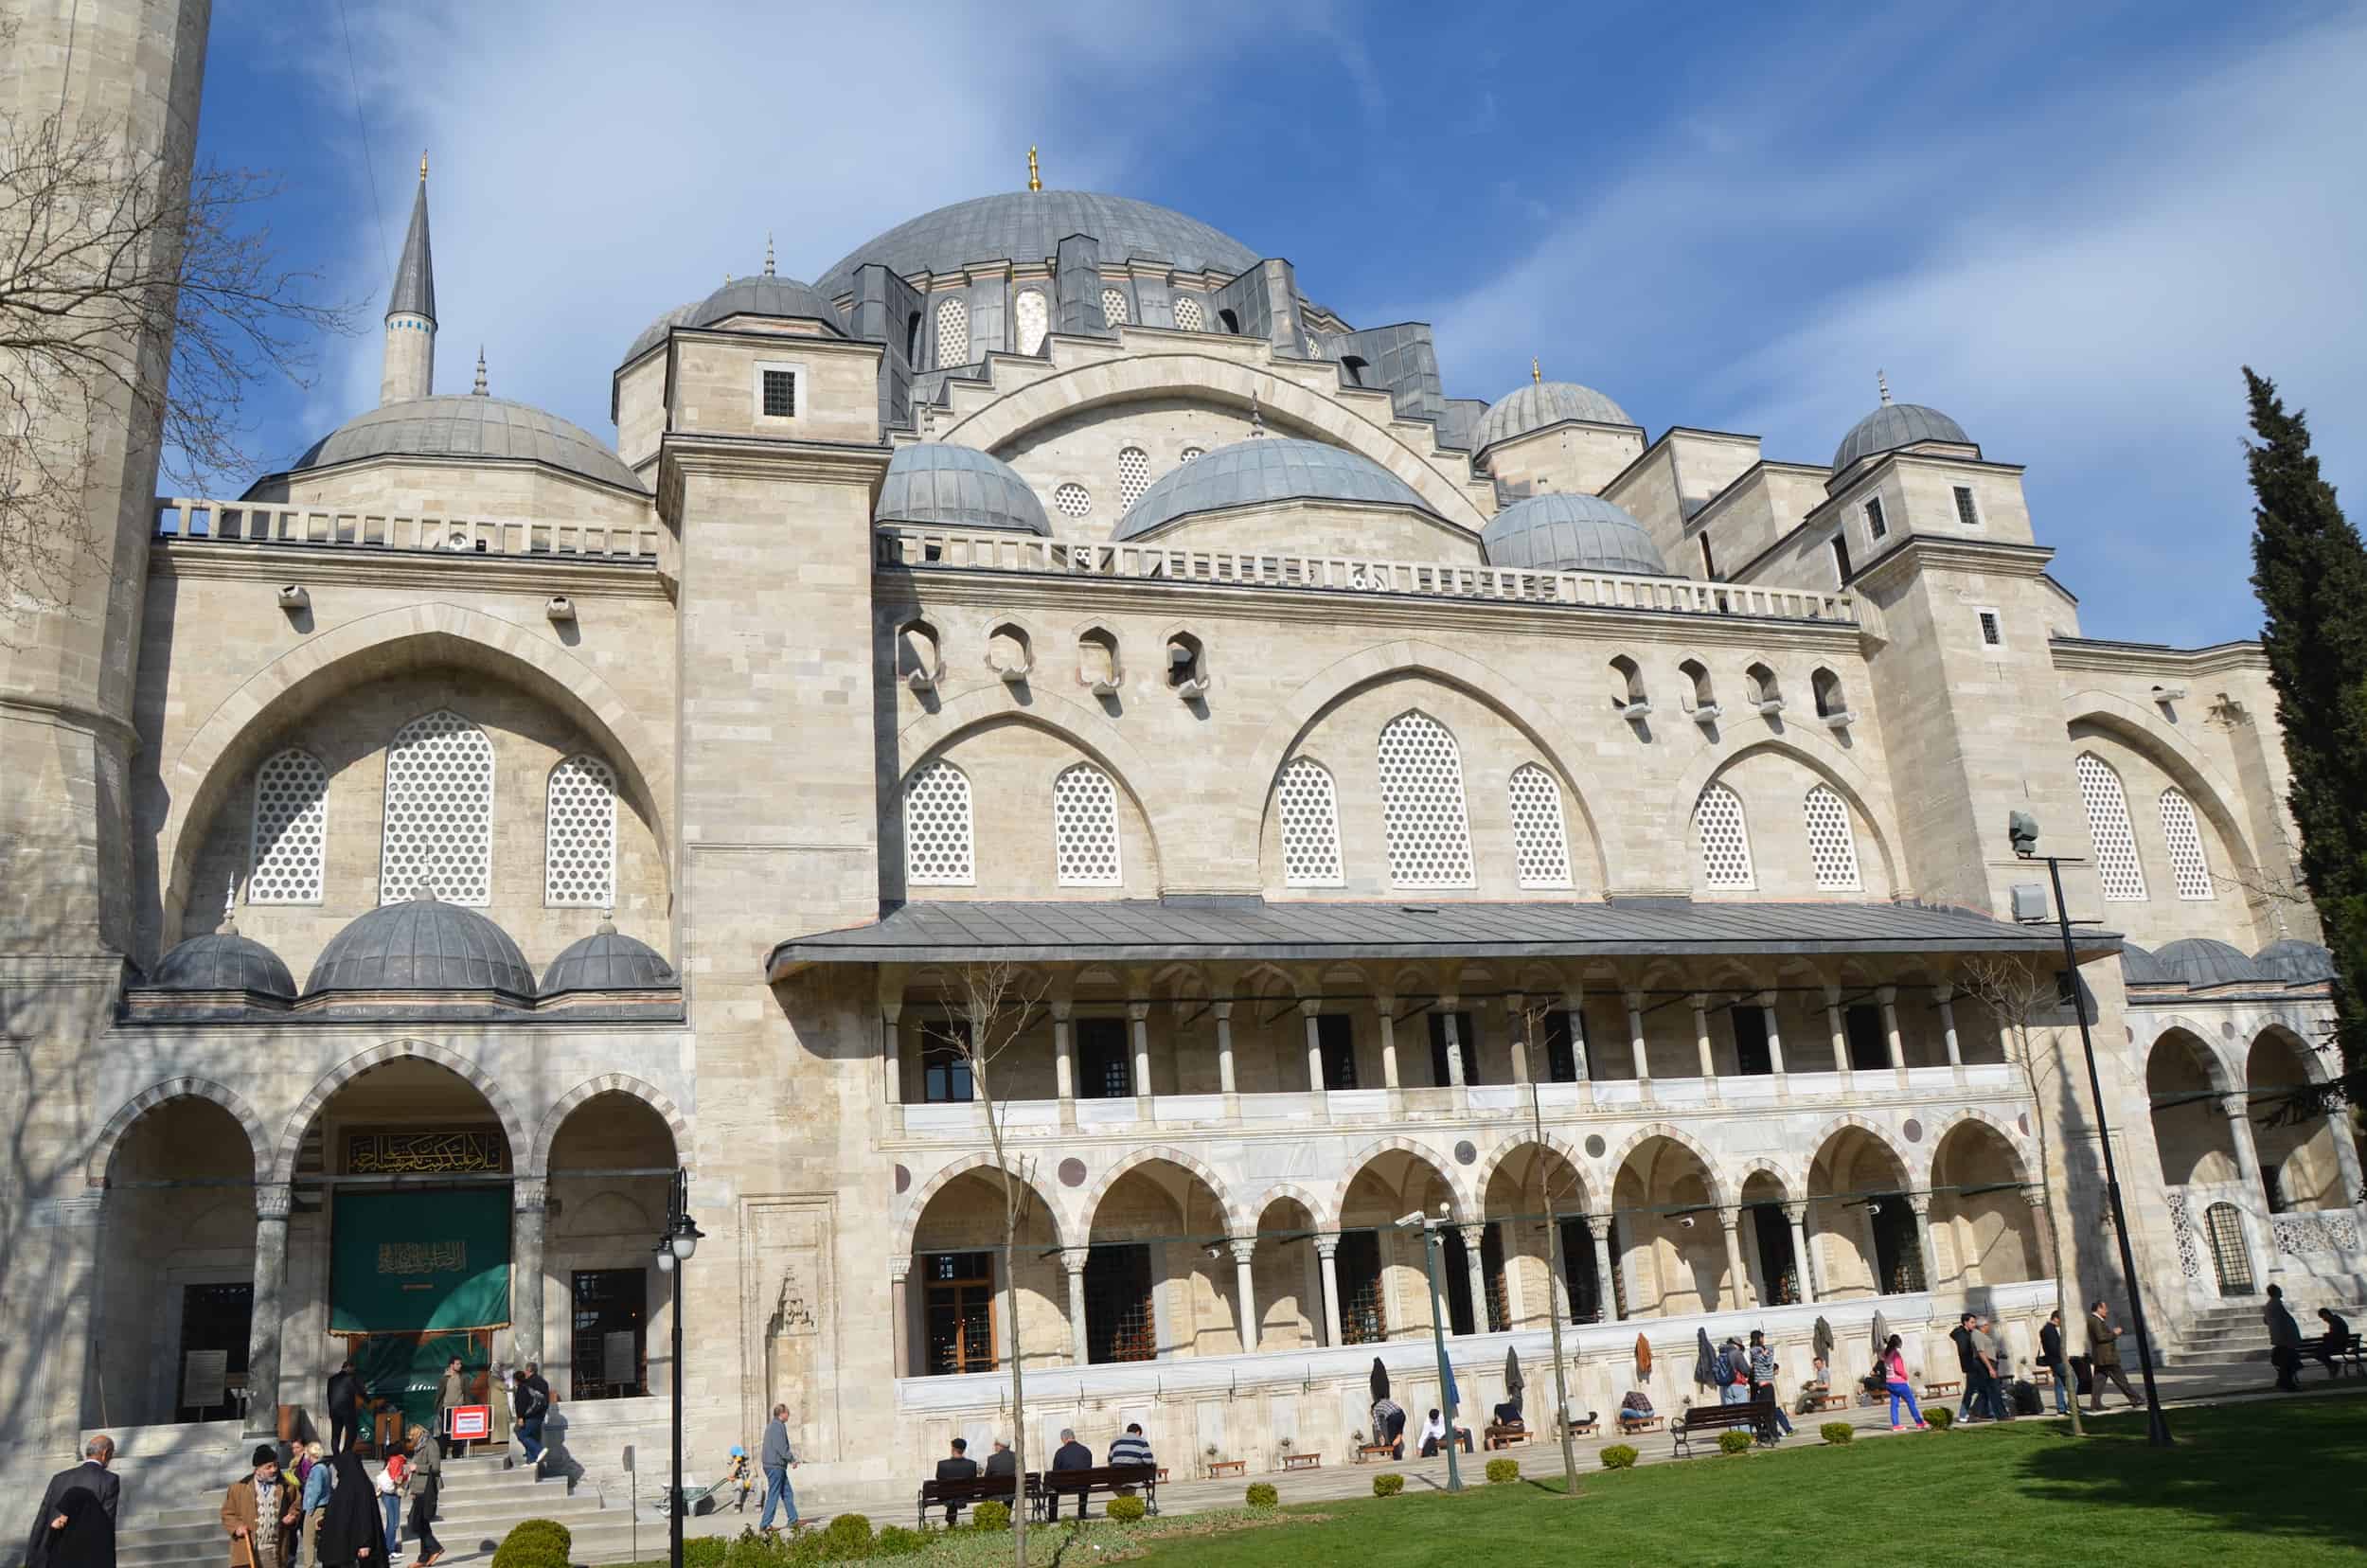 North side of the Süleymaniye Mosque in Istanbul, Turkey